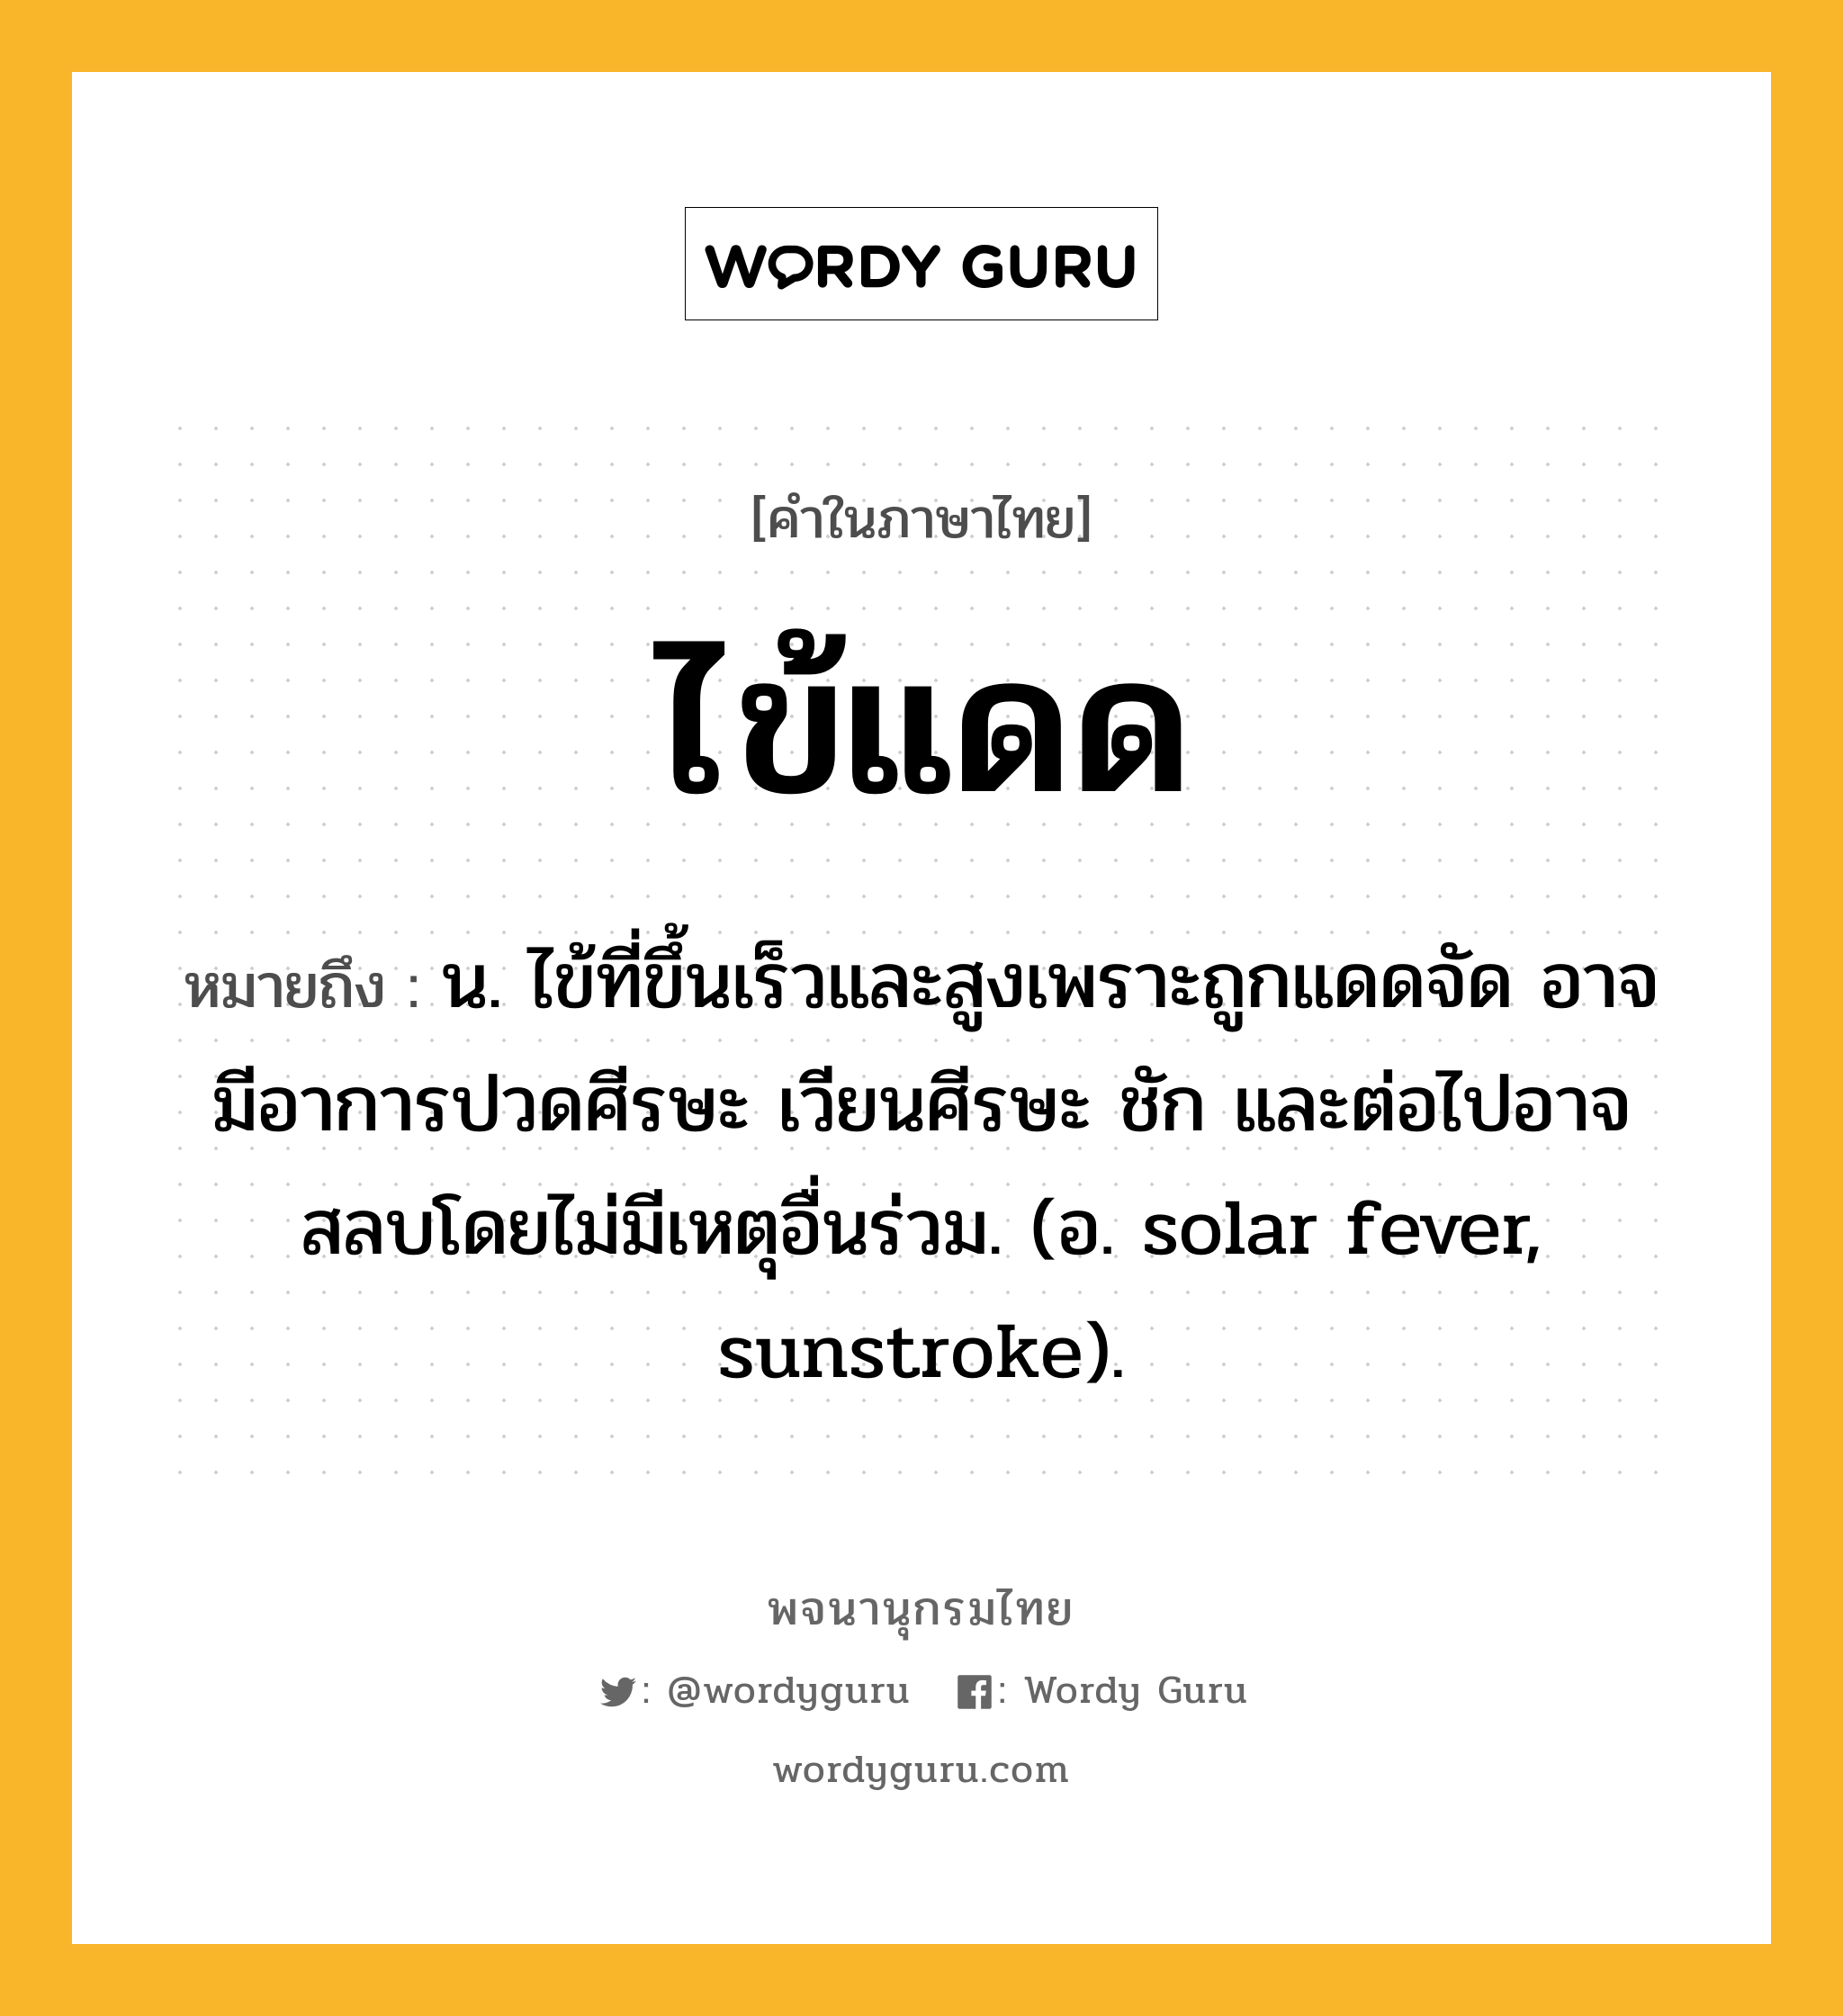 ไข้แดด ความหมาย หมายถึงอะไร?, คำในภาษาไทย ไข้แดด หมายถึง น. ไข้ที่ขึ้นเร็วและสูงเพราะถูกแดดจัด อาจมีอาการปวดศีรษะ เวียนศีรษะ ชัก และต่อไปอาจสลบโดยไม่มีเหตุอื่นร่วม. (อ. solar fever, sunstroke).